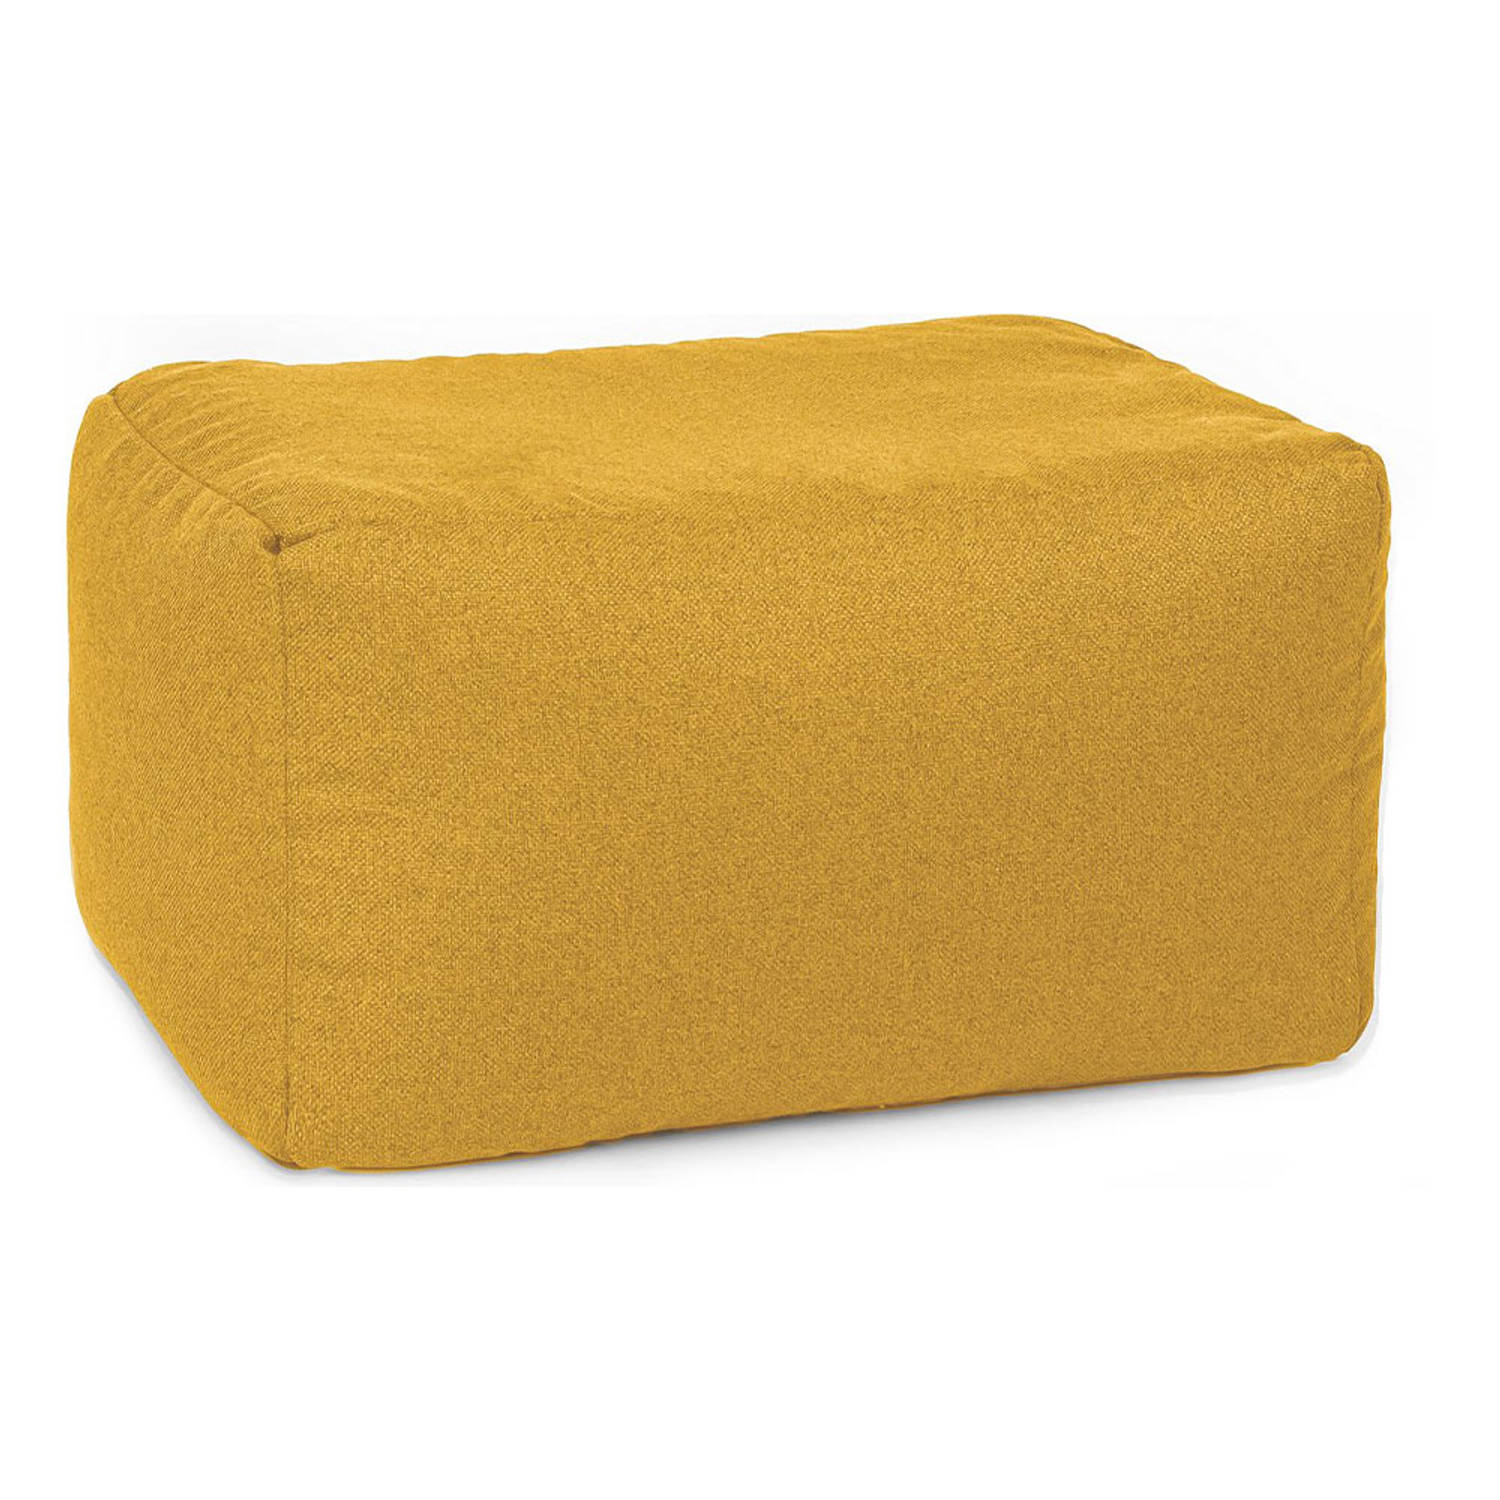 Drop & Sit duurzame zitzak poef geel 55x75x45cm